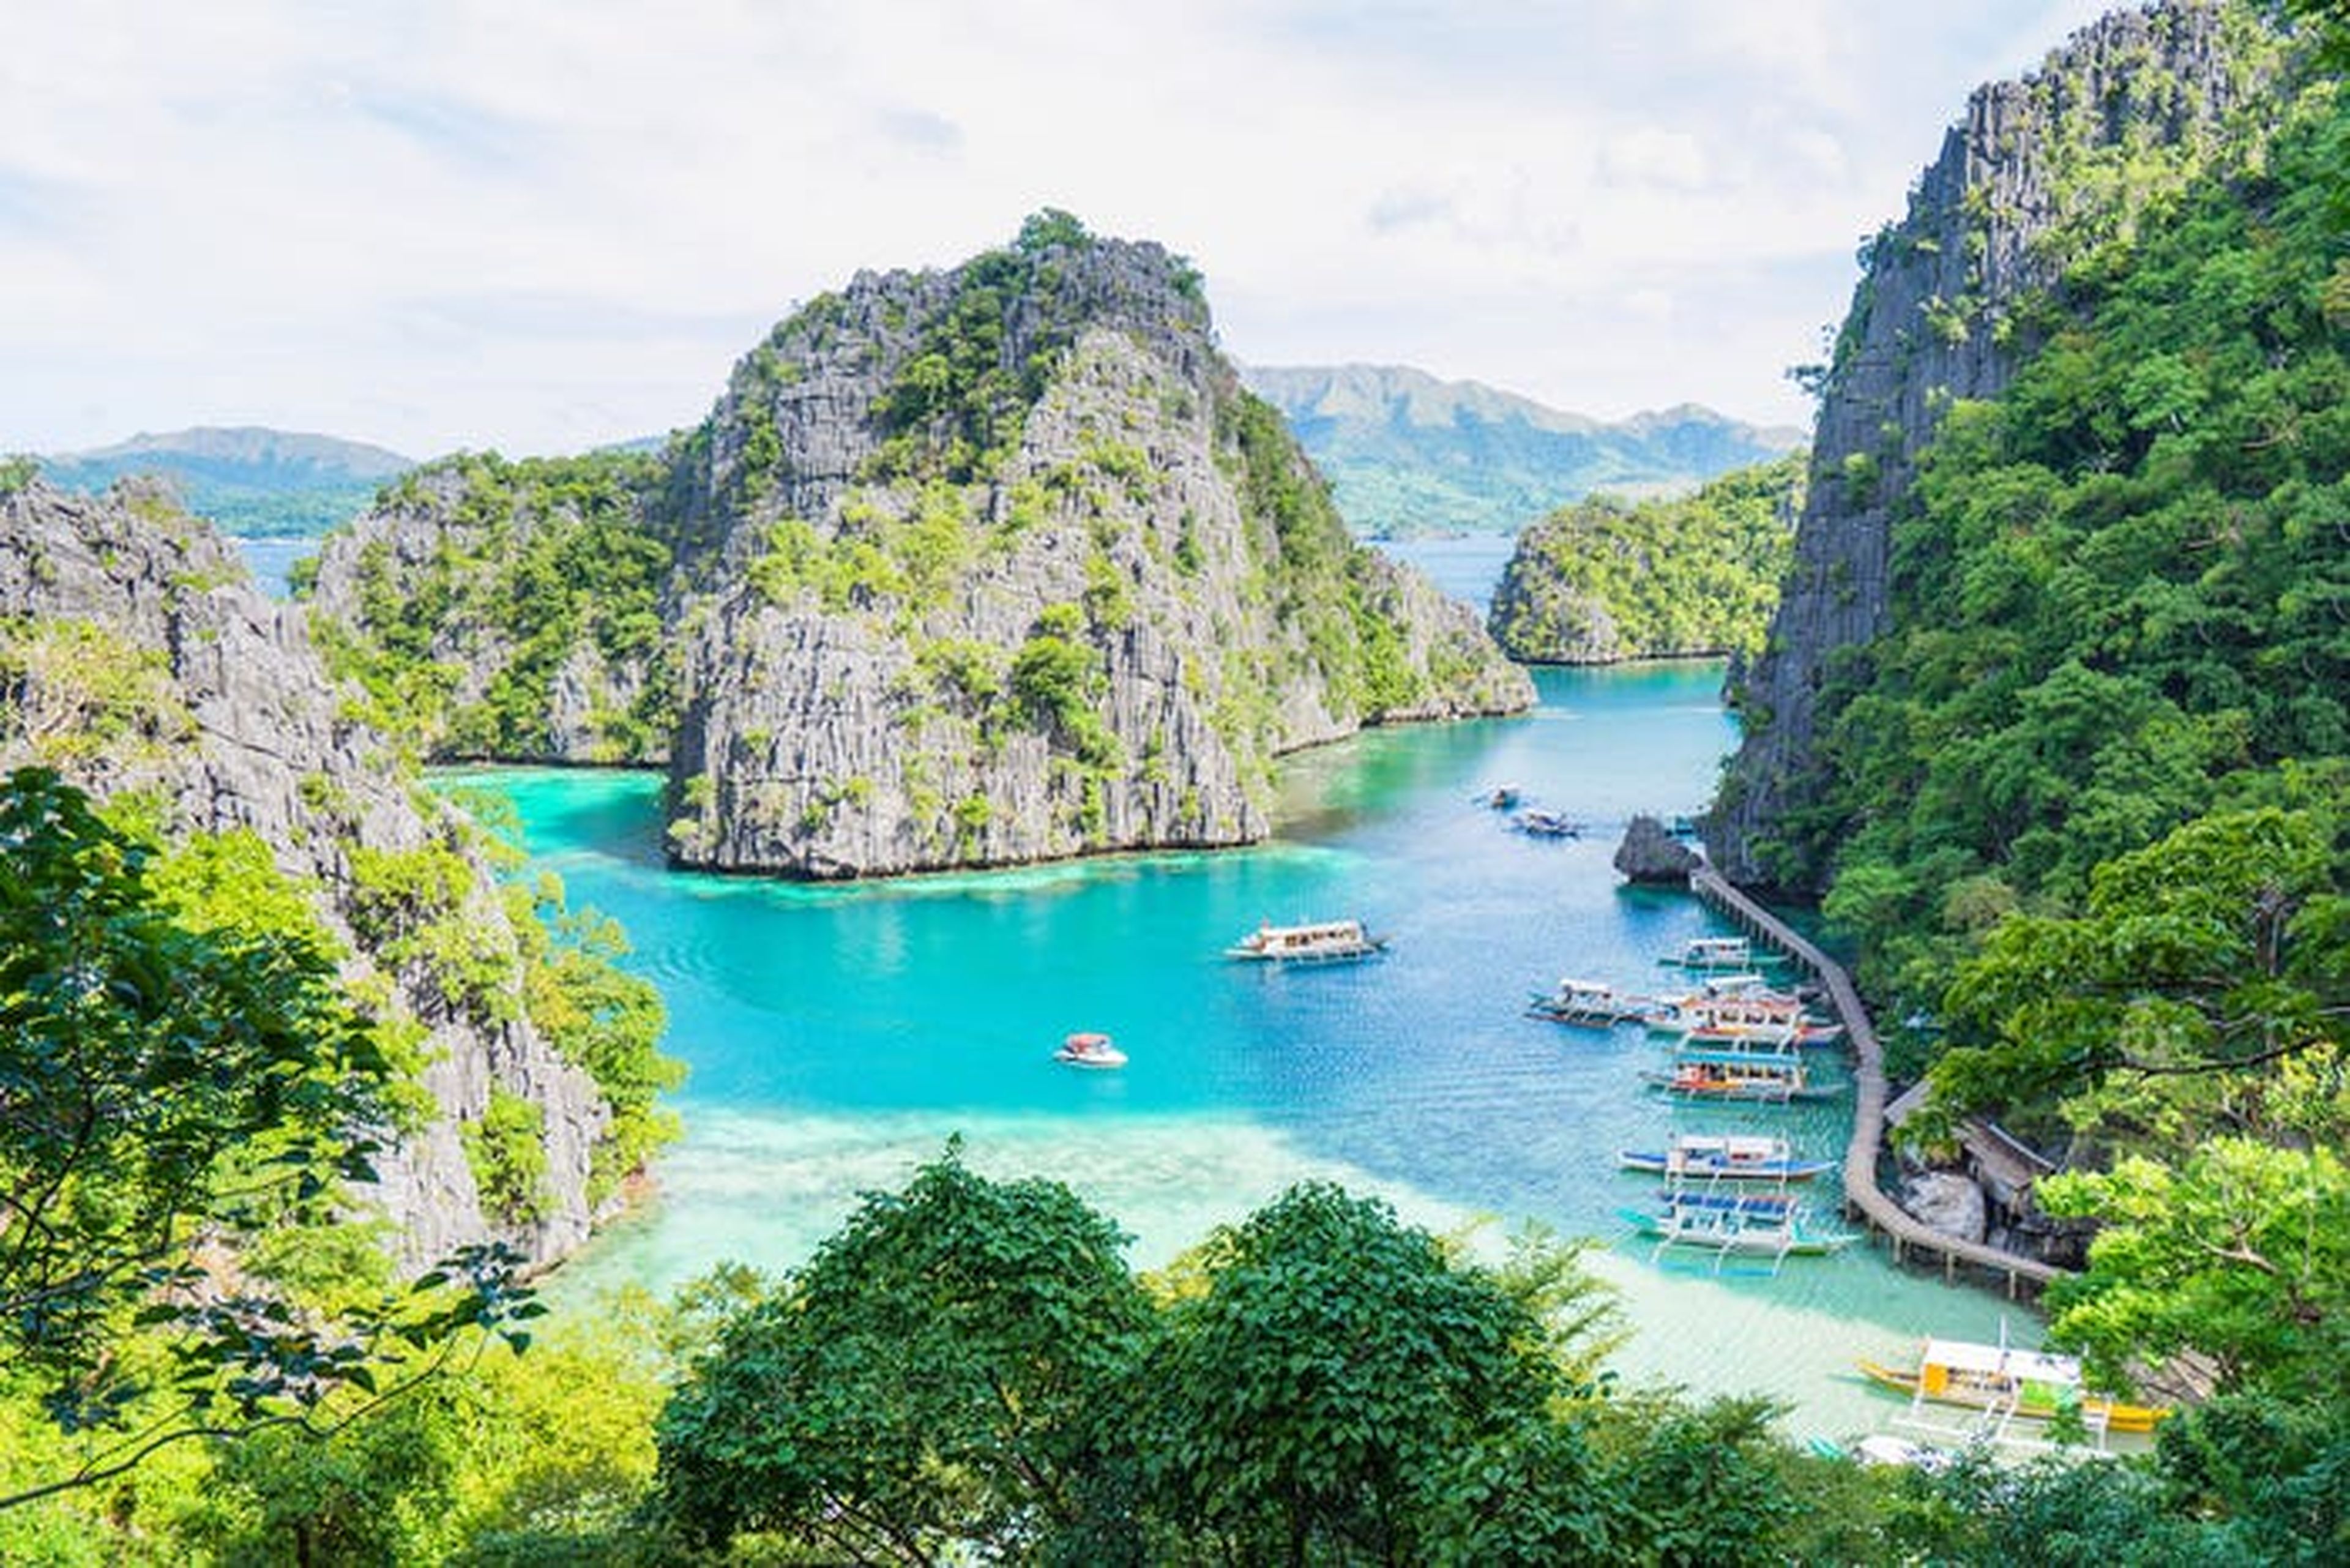 La provincia de Palawan, Filipinas, que inspiró "The Beach" de Alex Garland.